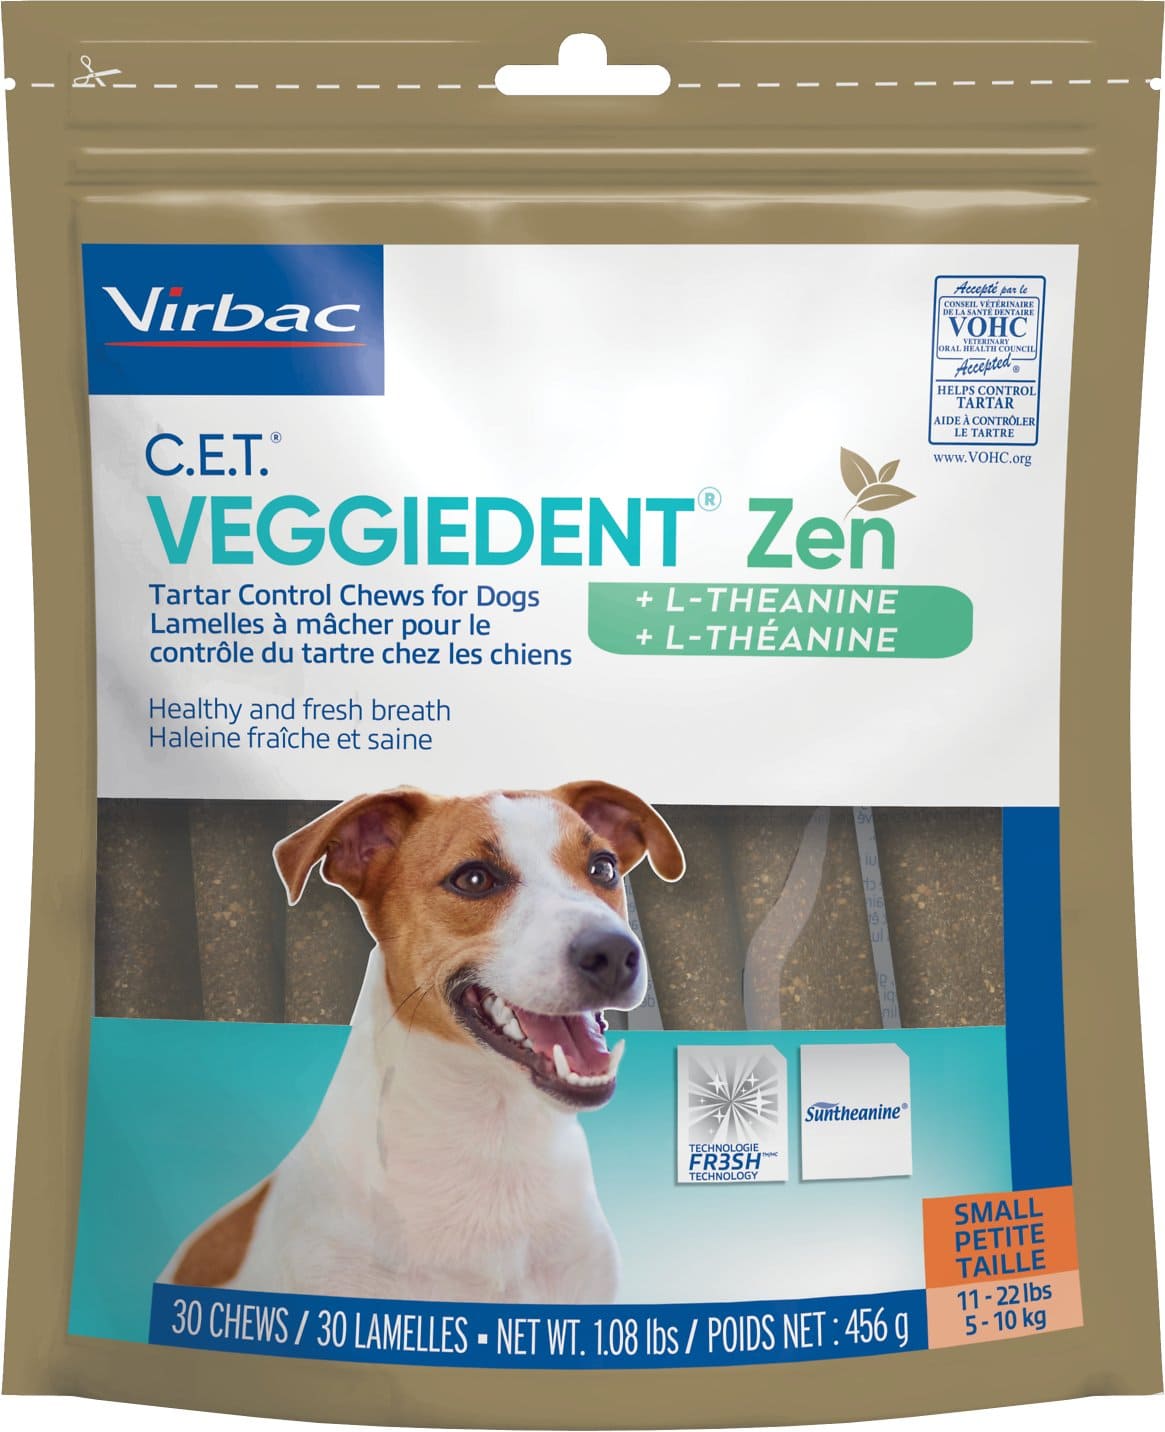 C.E.T. VeggieDent Zen + L-Theanine for small dogs 11-22 lbs 30 chews 1